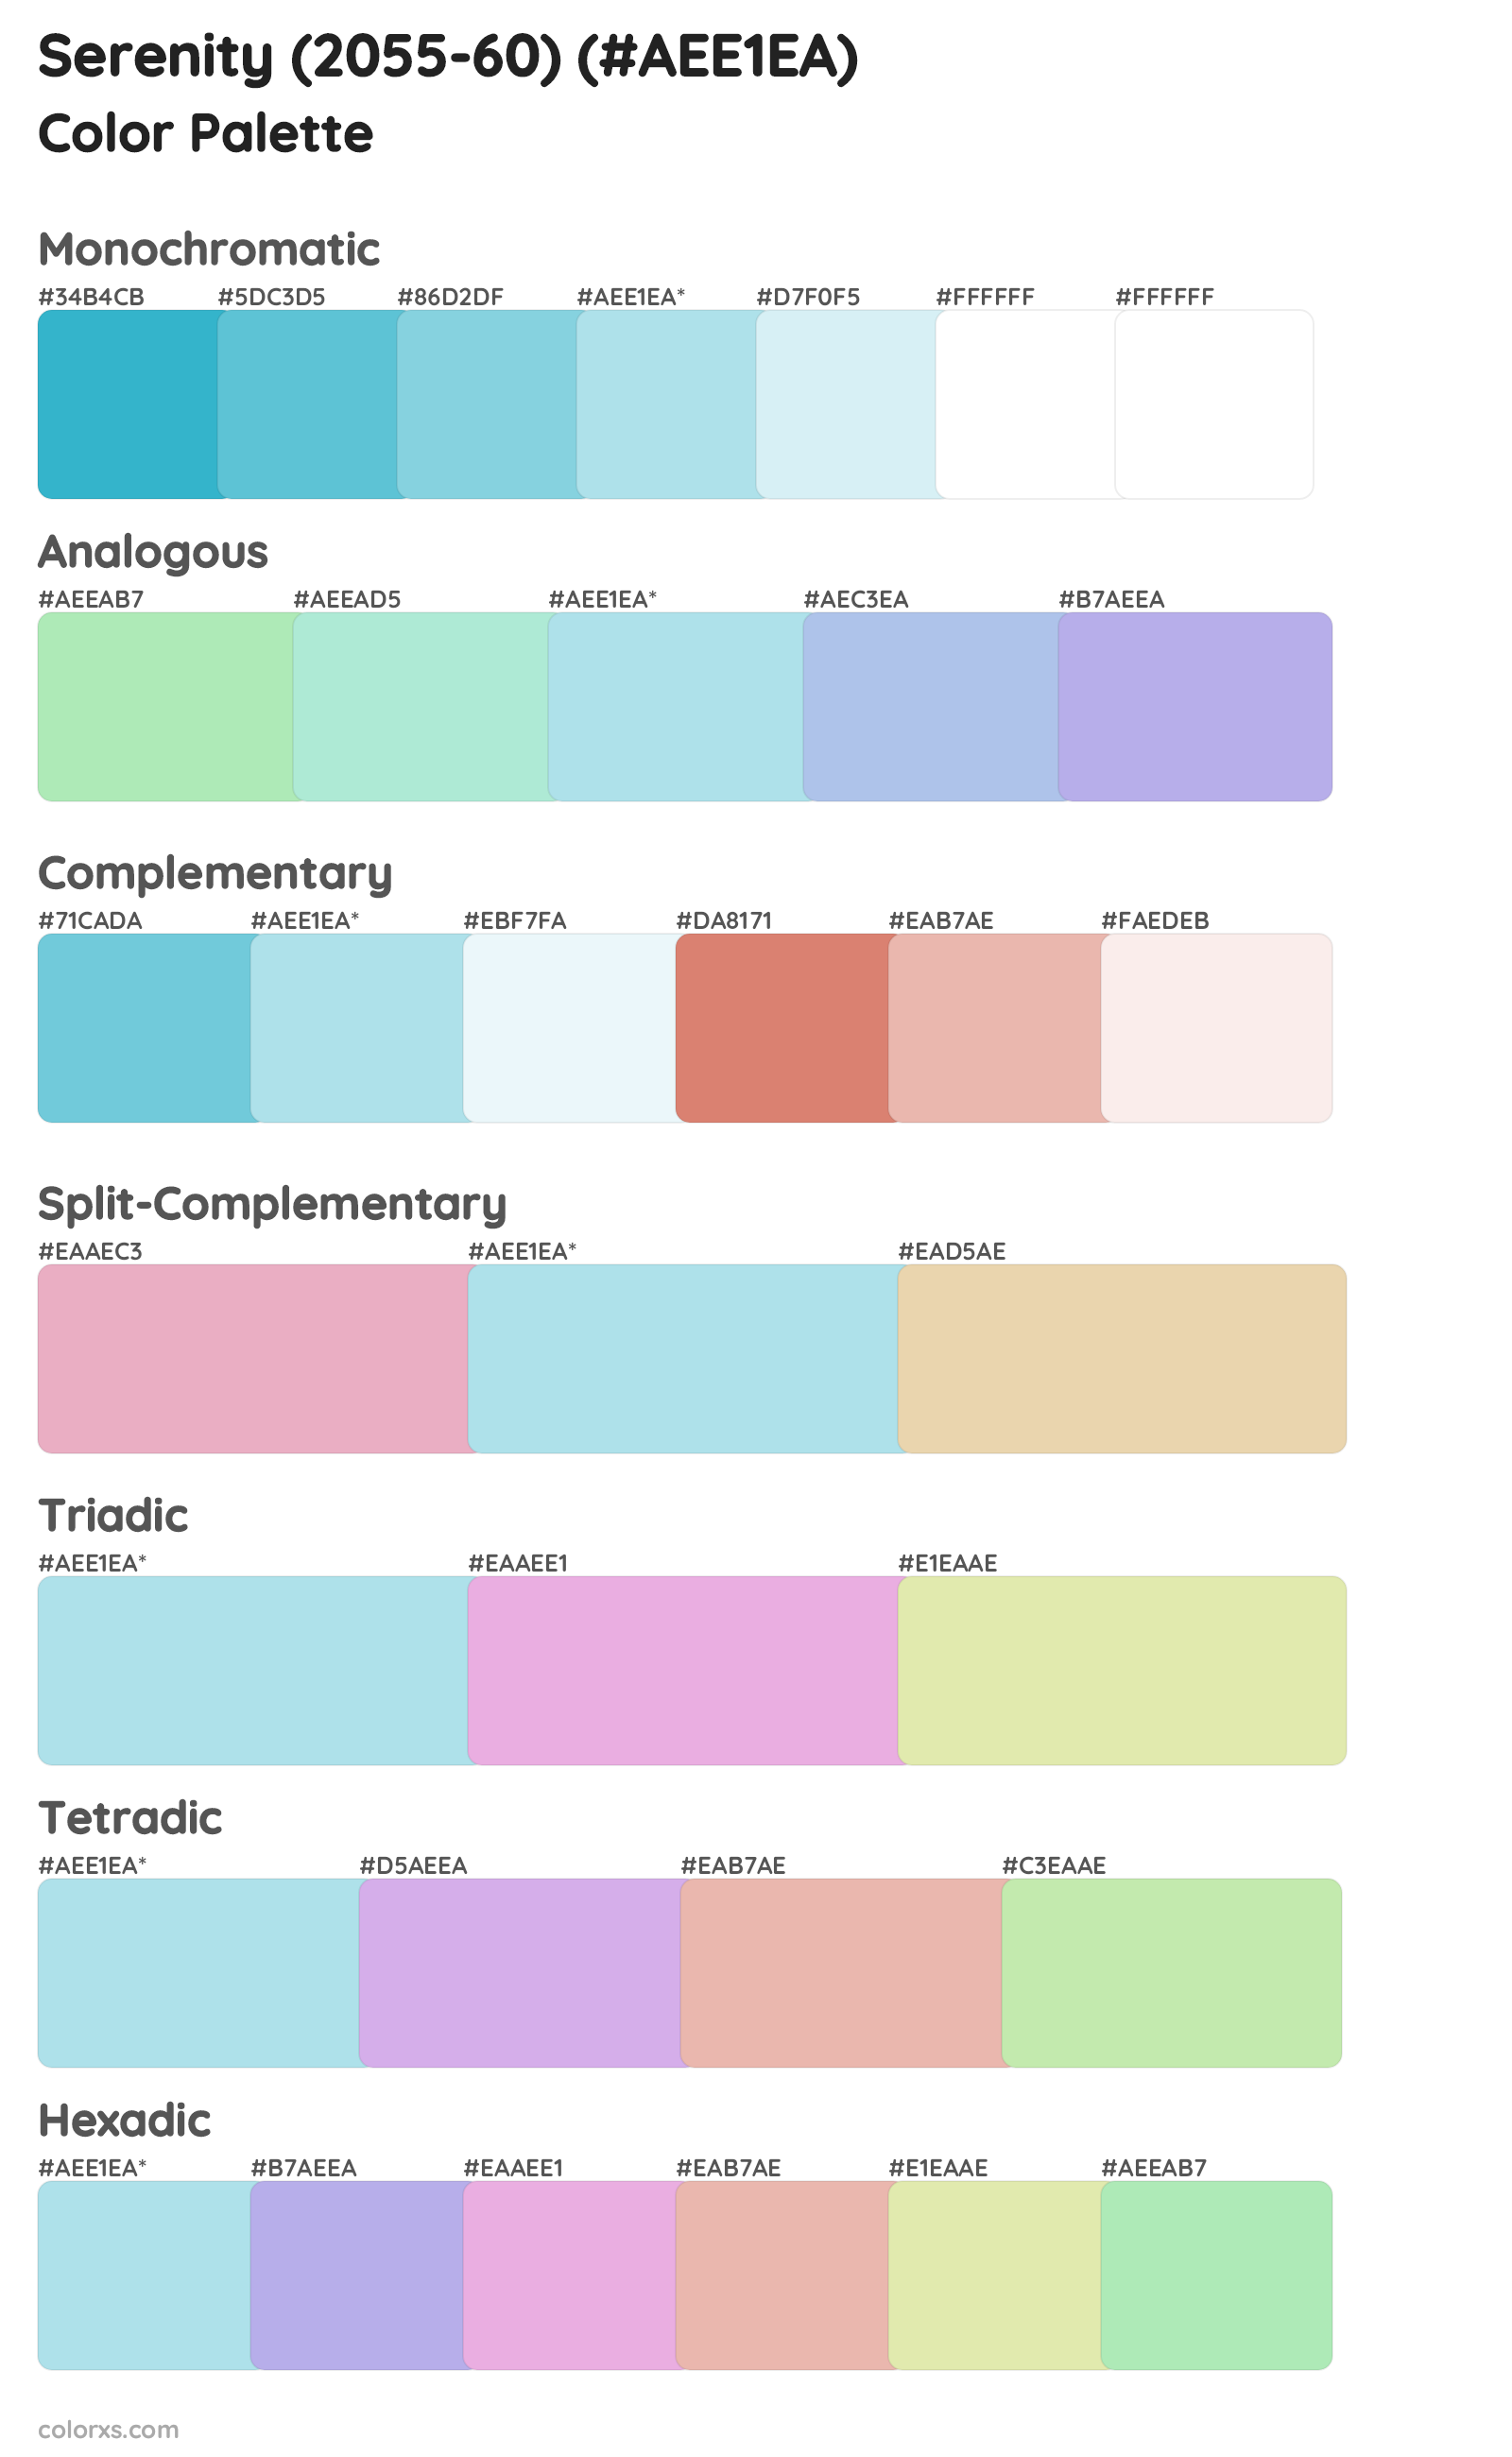 Serenity (2055-60) Color Scheme Palettes